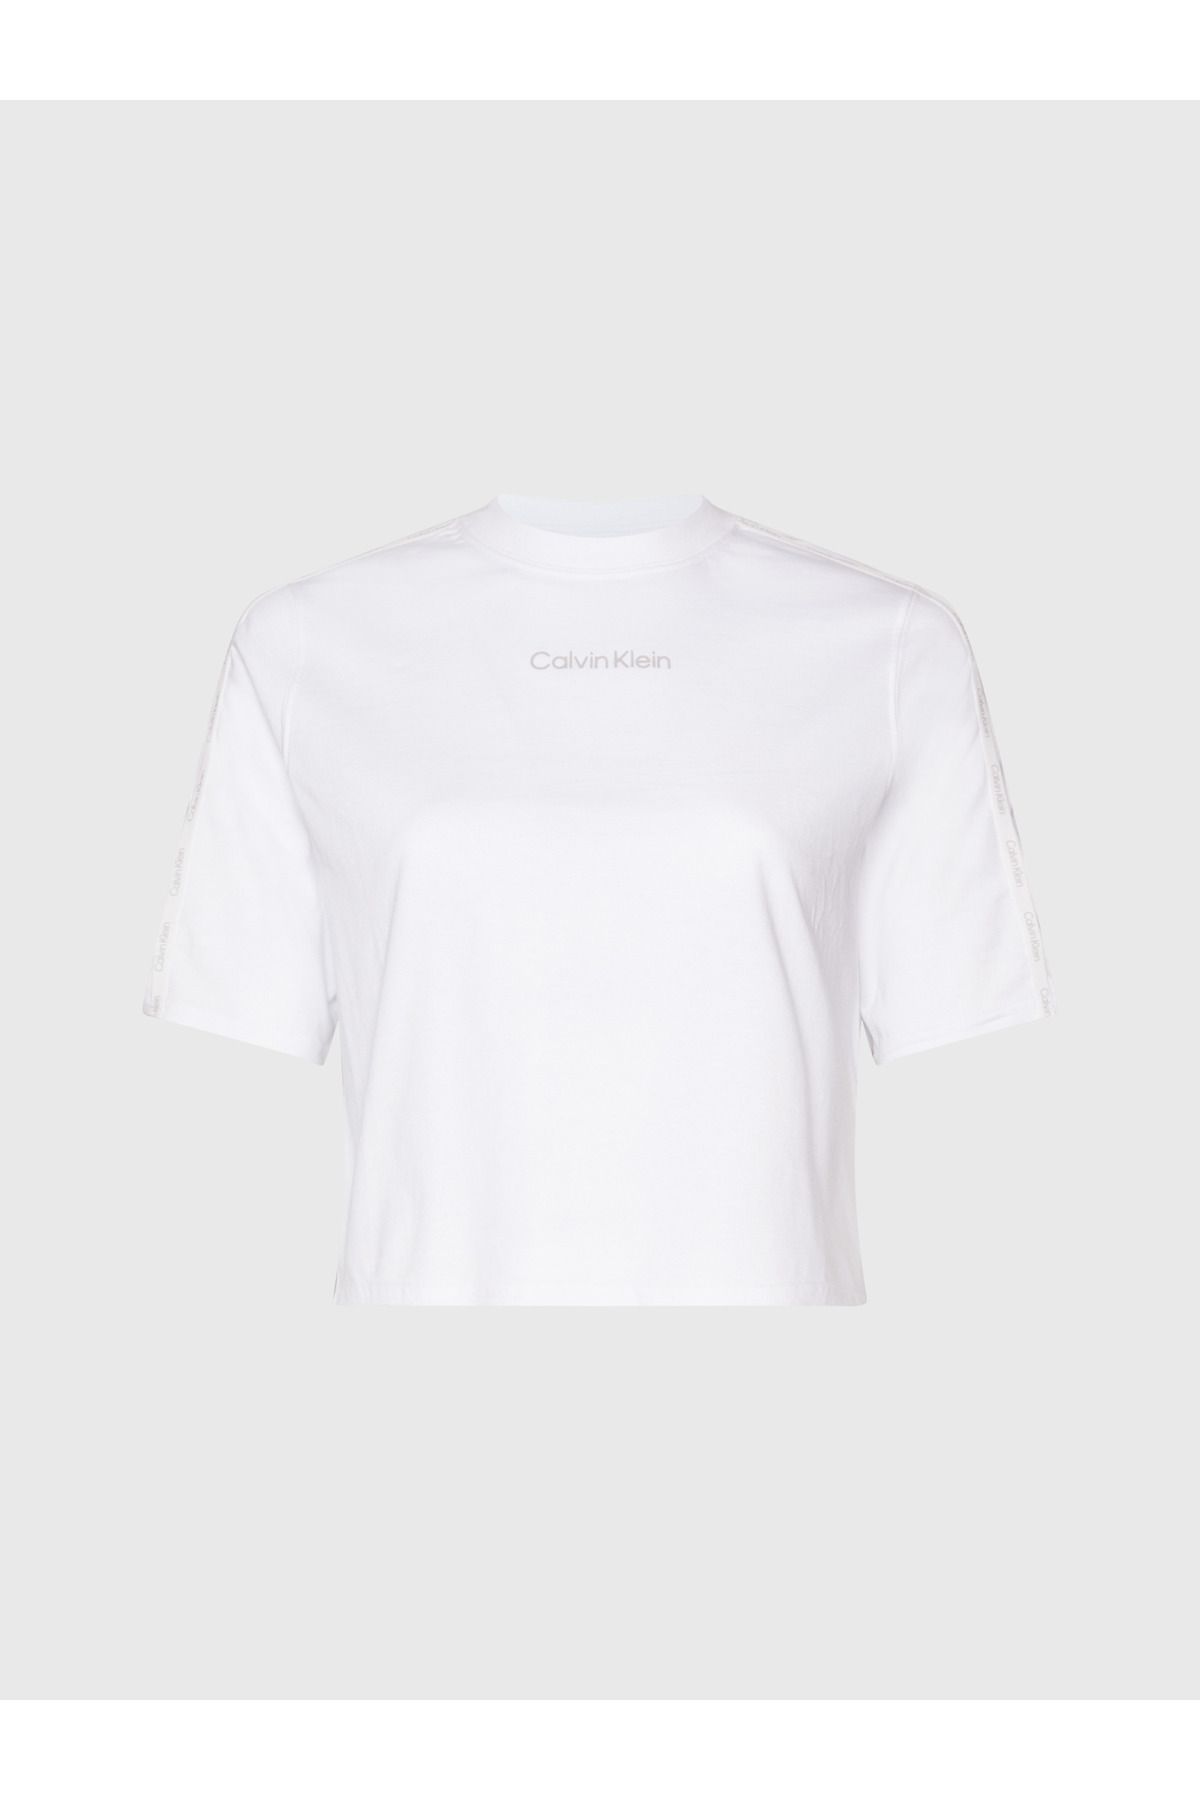 Calvin Klein Kadın Kol Ve Göğüs Kısmında Marka Logolu Pamuklu Bisiklet Yakalı Nem Emici Kumaşlı Beyaz T-shirt 00